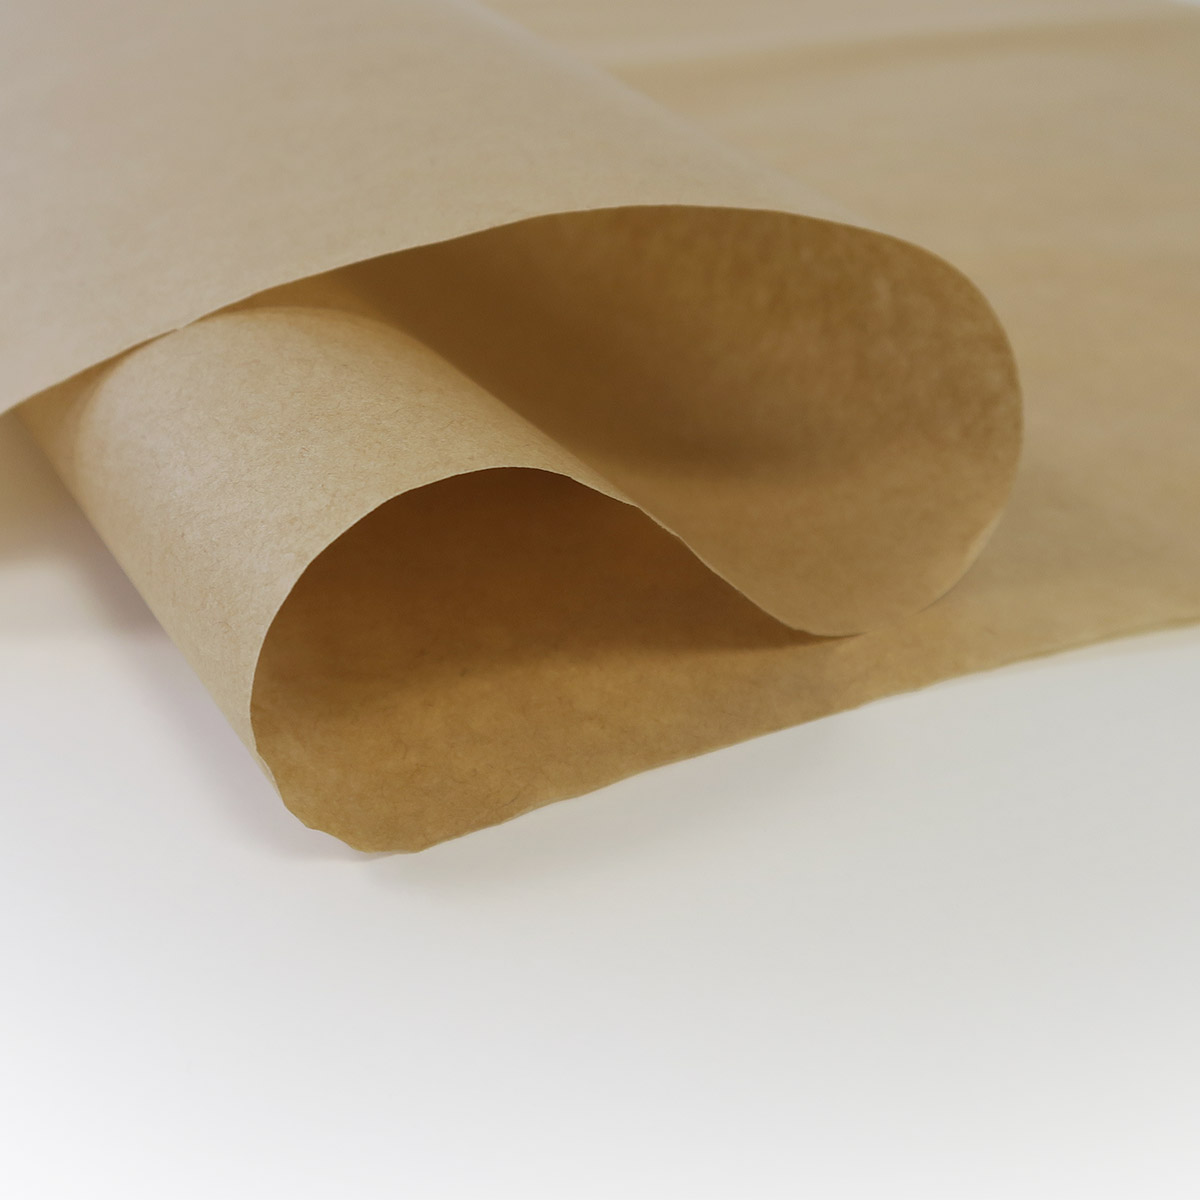 1 rouleau de papier de calage en kraft brun 20cm x 250m - La Poste